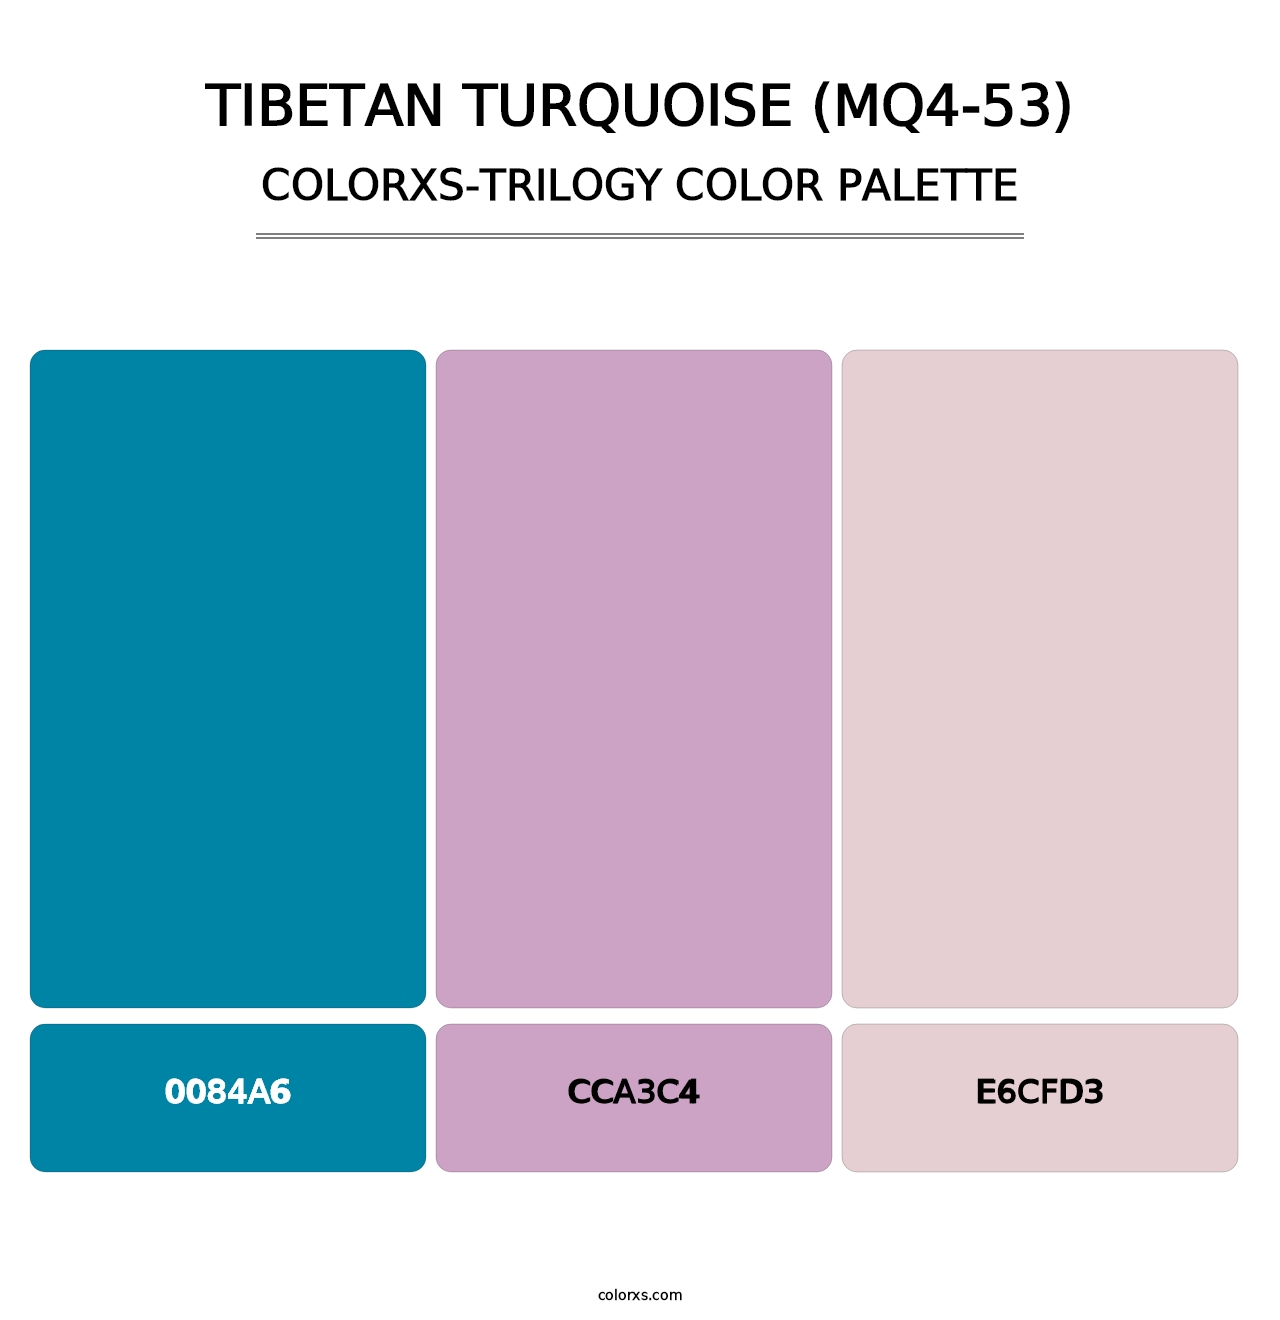 Tibetan Turquoise (MQ4-53) - Colorxs Trilogy Palette